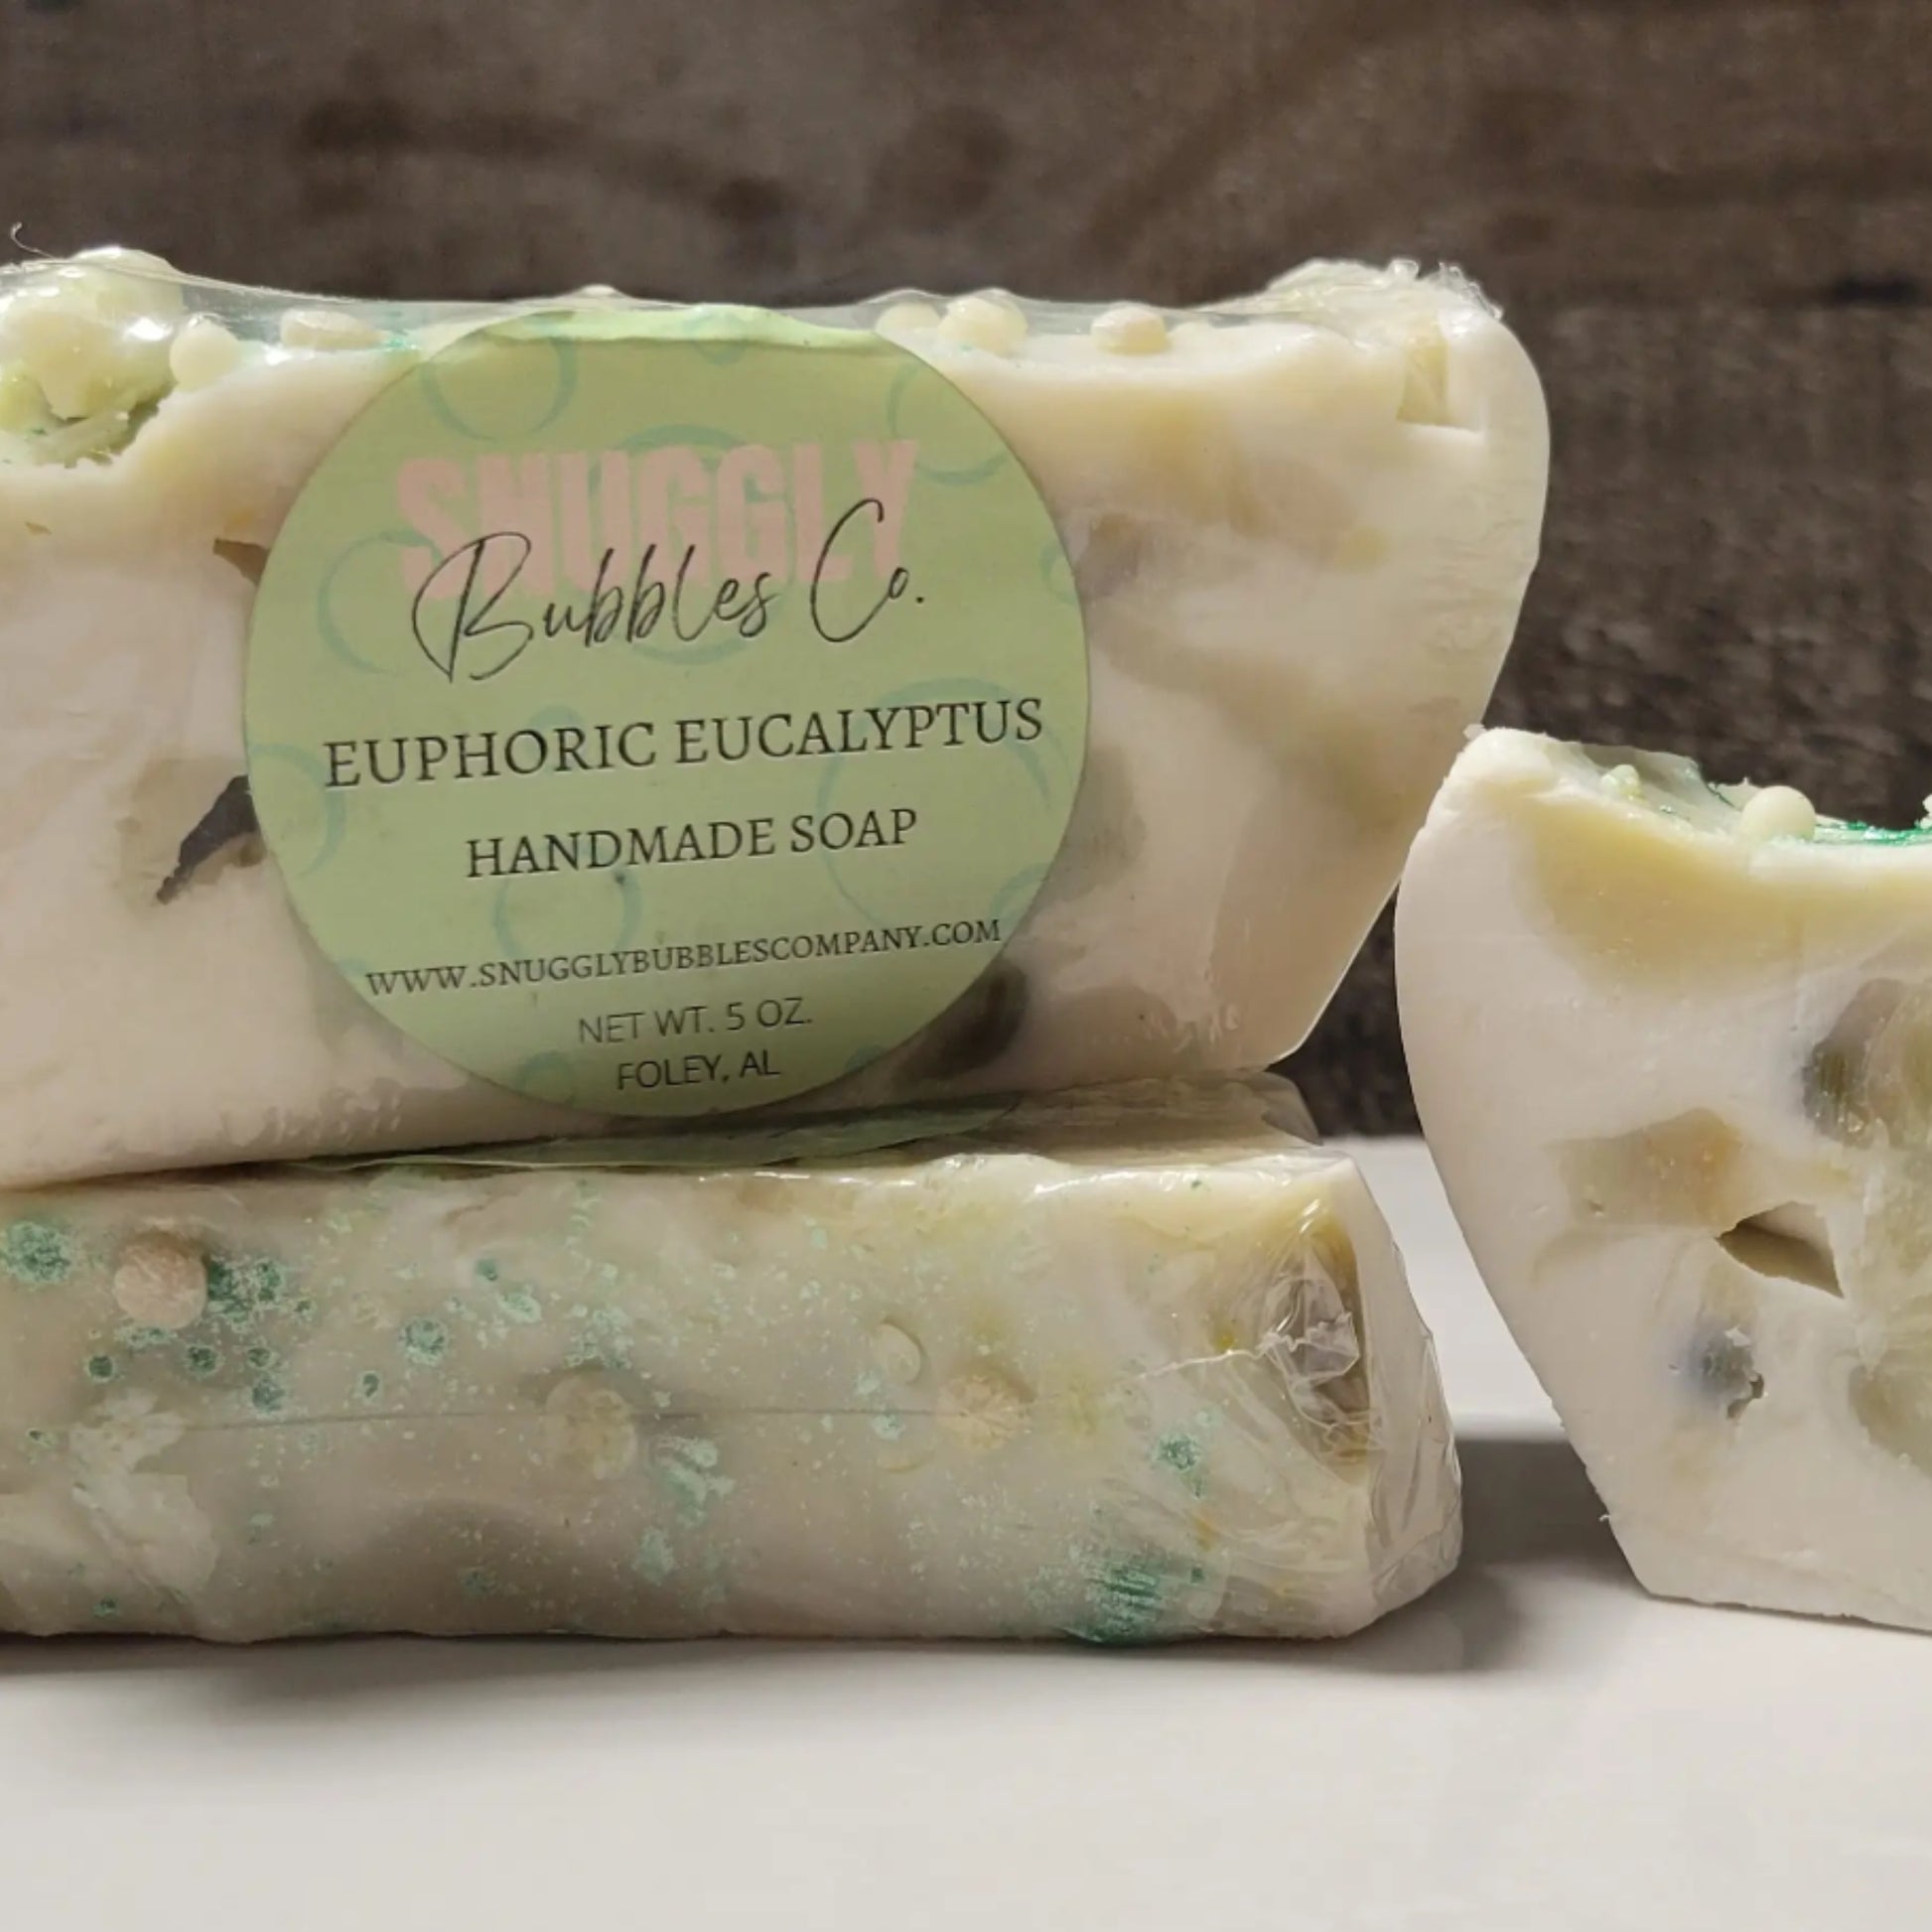 Euphoric Eucalyptus Bubbly Handmade Soap - Made in the USA